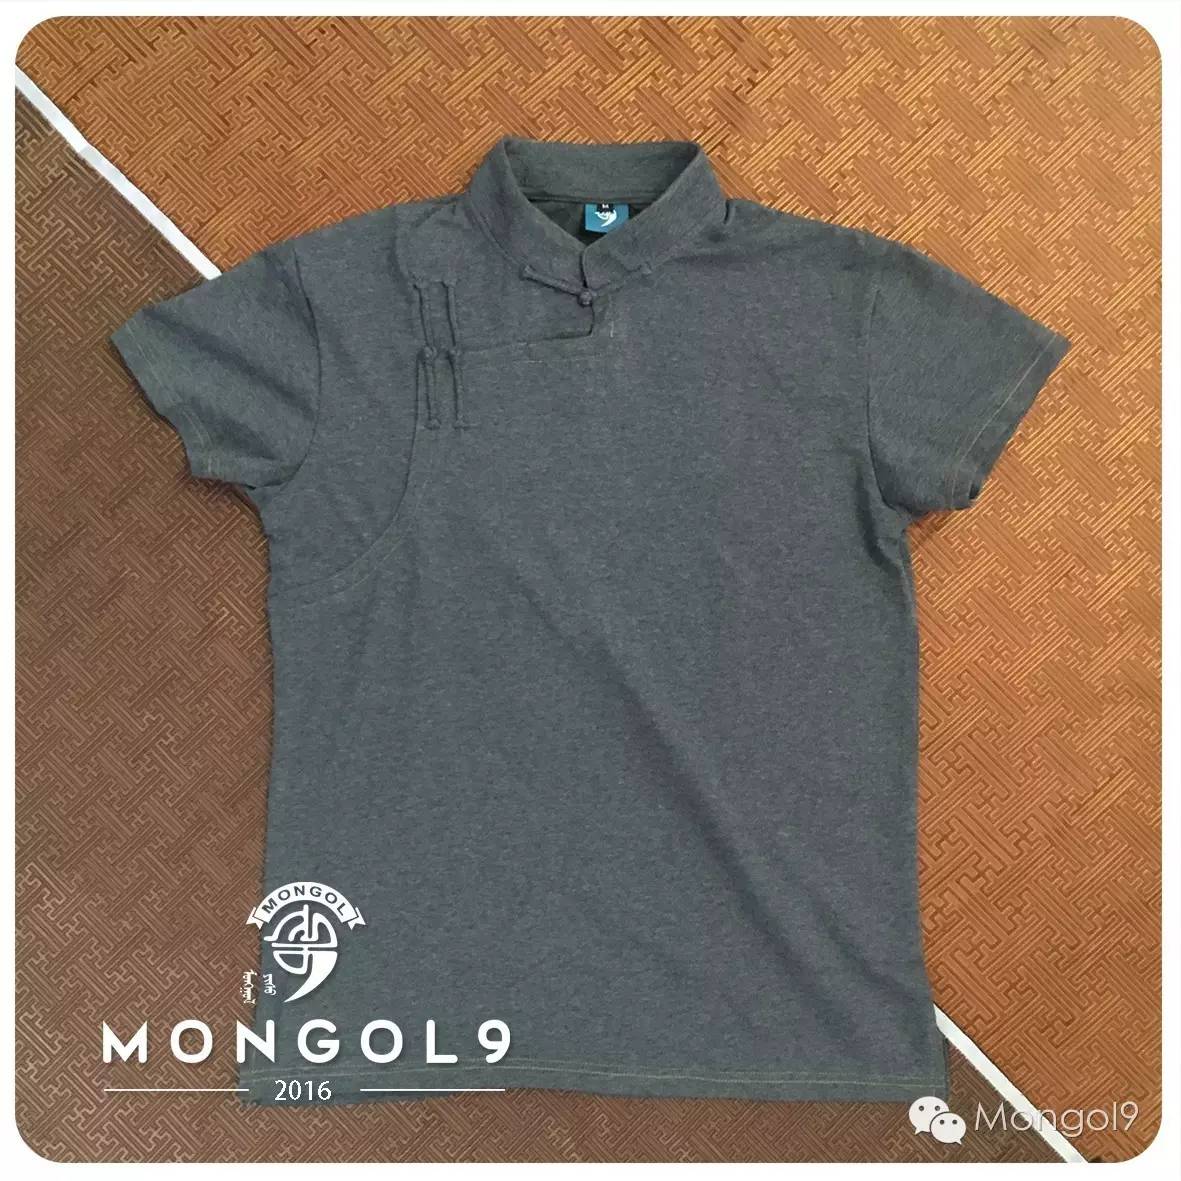 新款发布 | Mongol9 民族风立领T恤